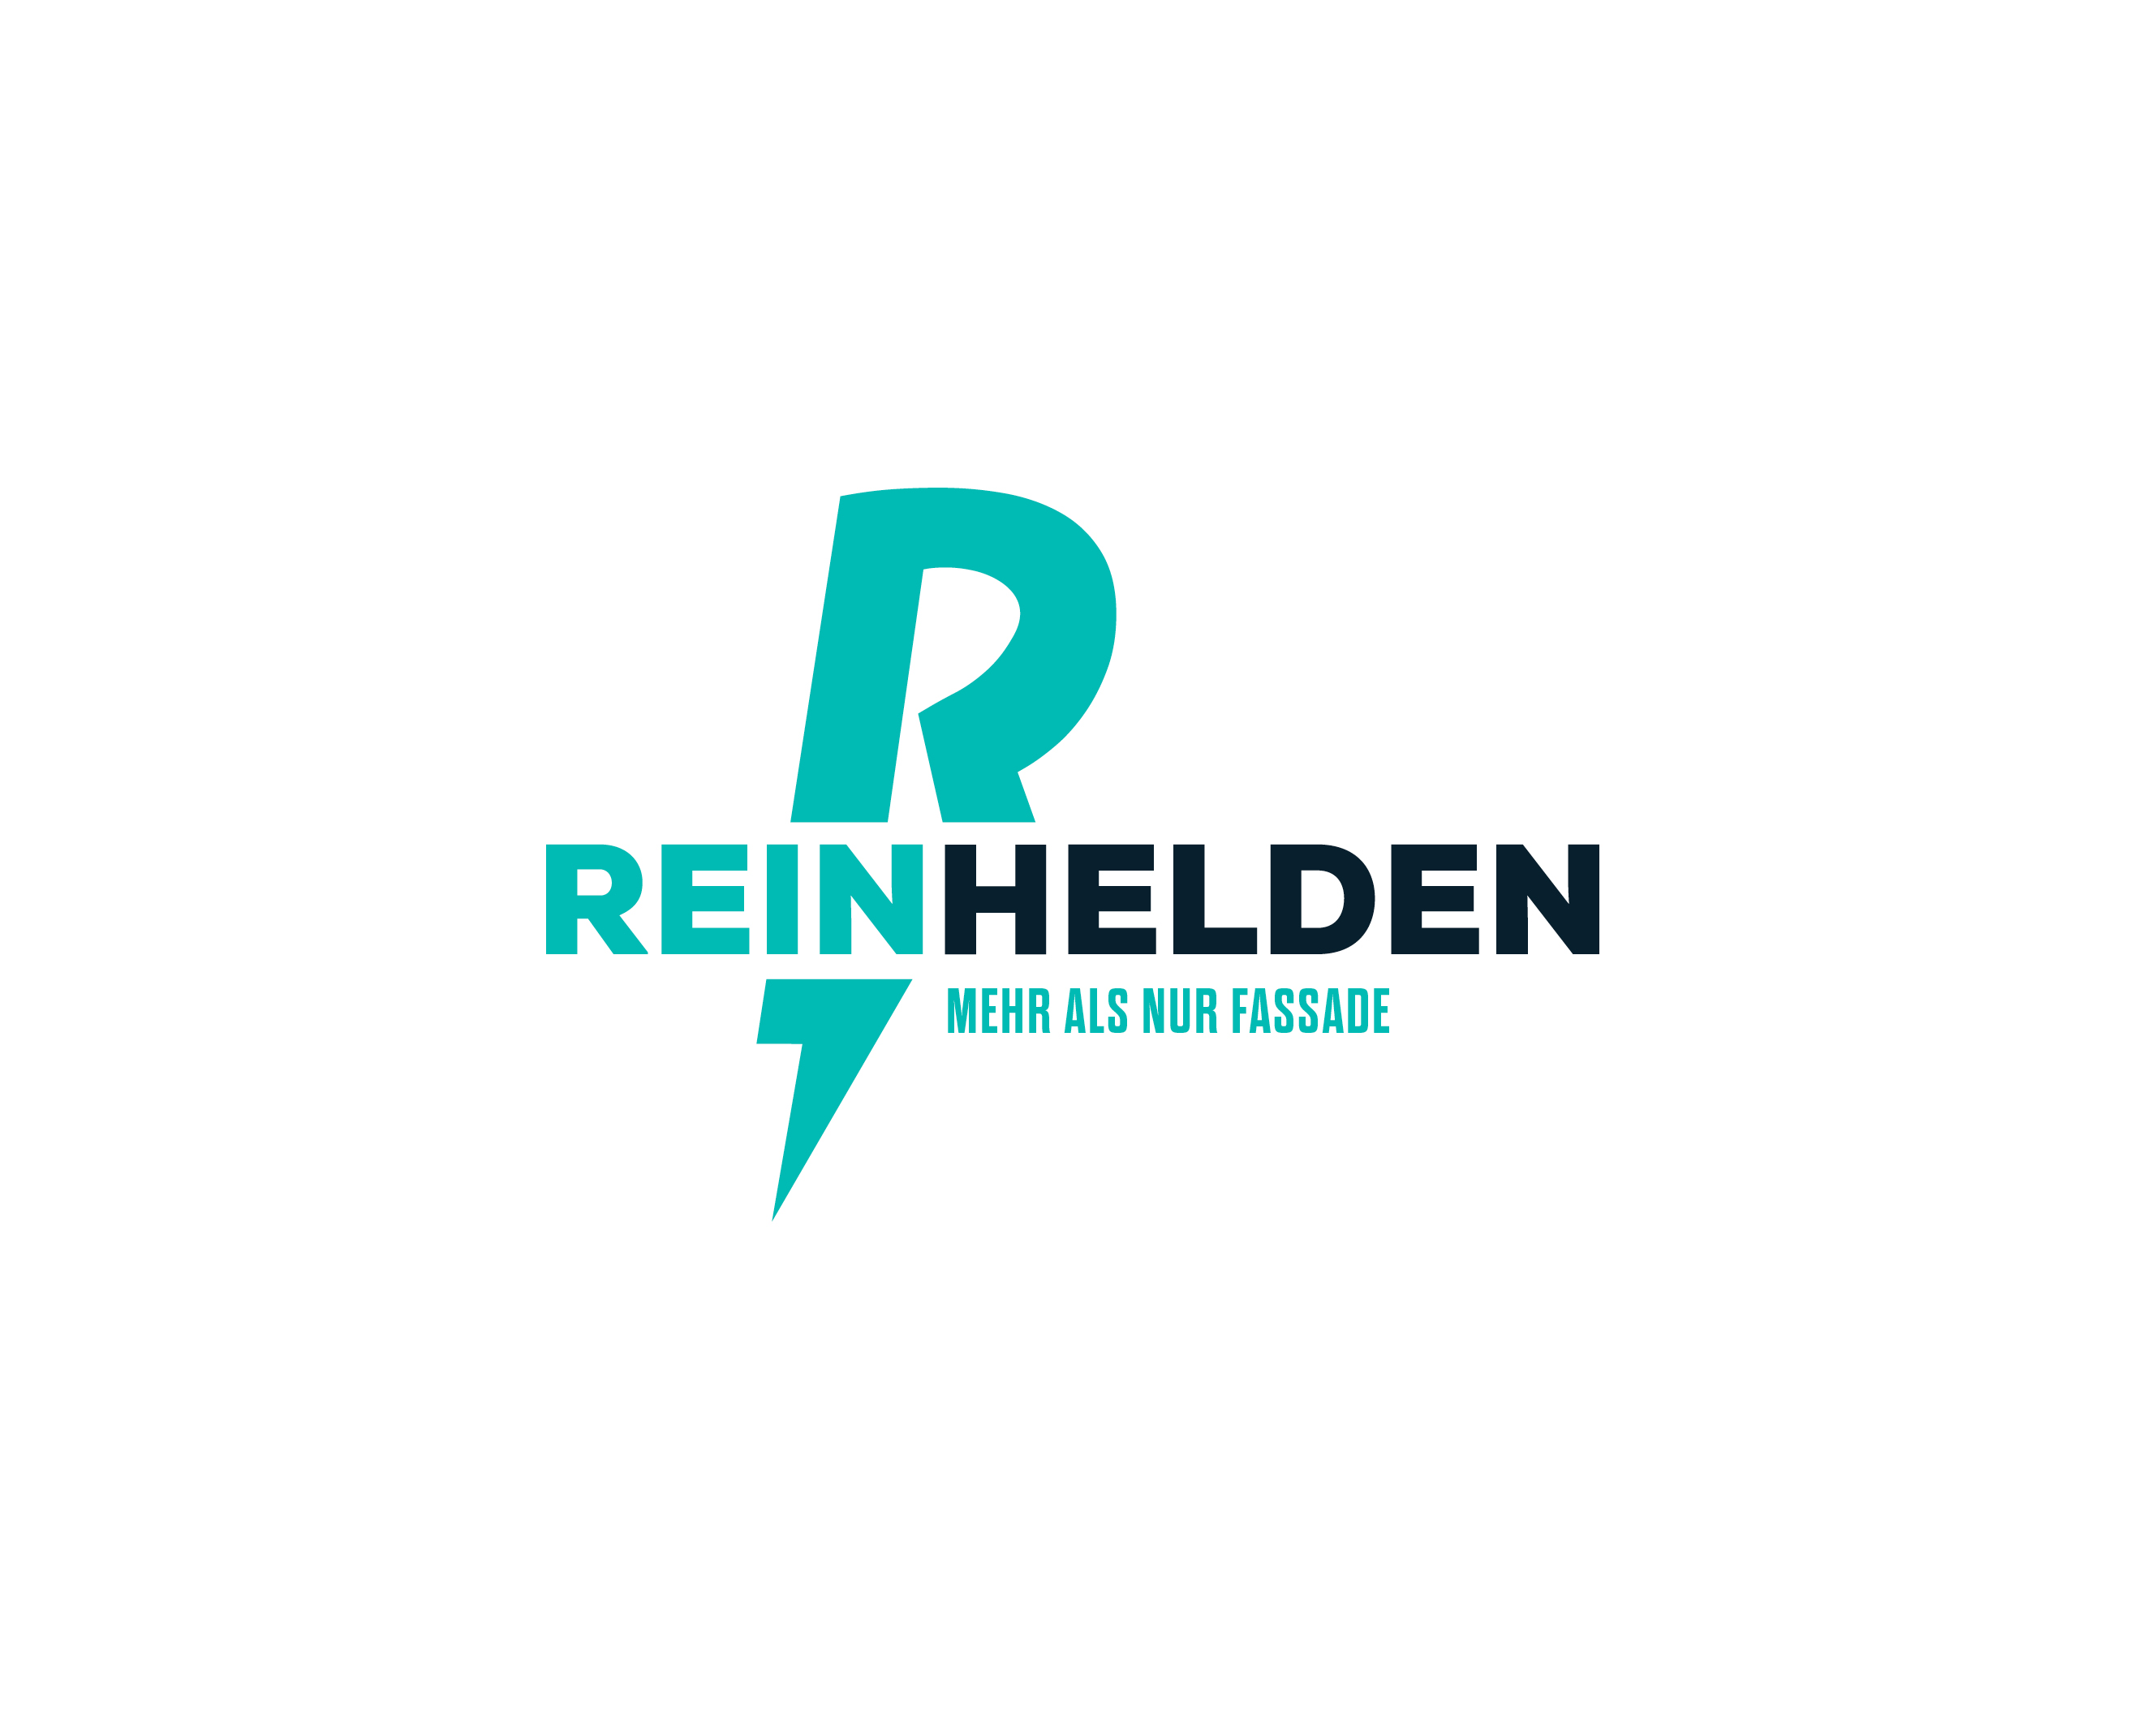 Reinhelden GmbH
Fassadenreinigung, Dachreinigung, Dachrinnenreinigung, Steinreinigung, Pflasterreinigung, Reinigung von Solar- und PV-Anlagen